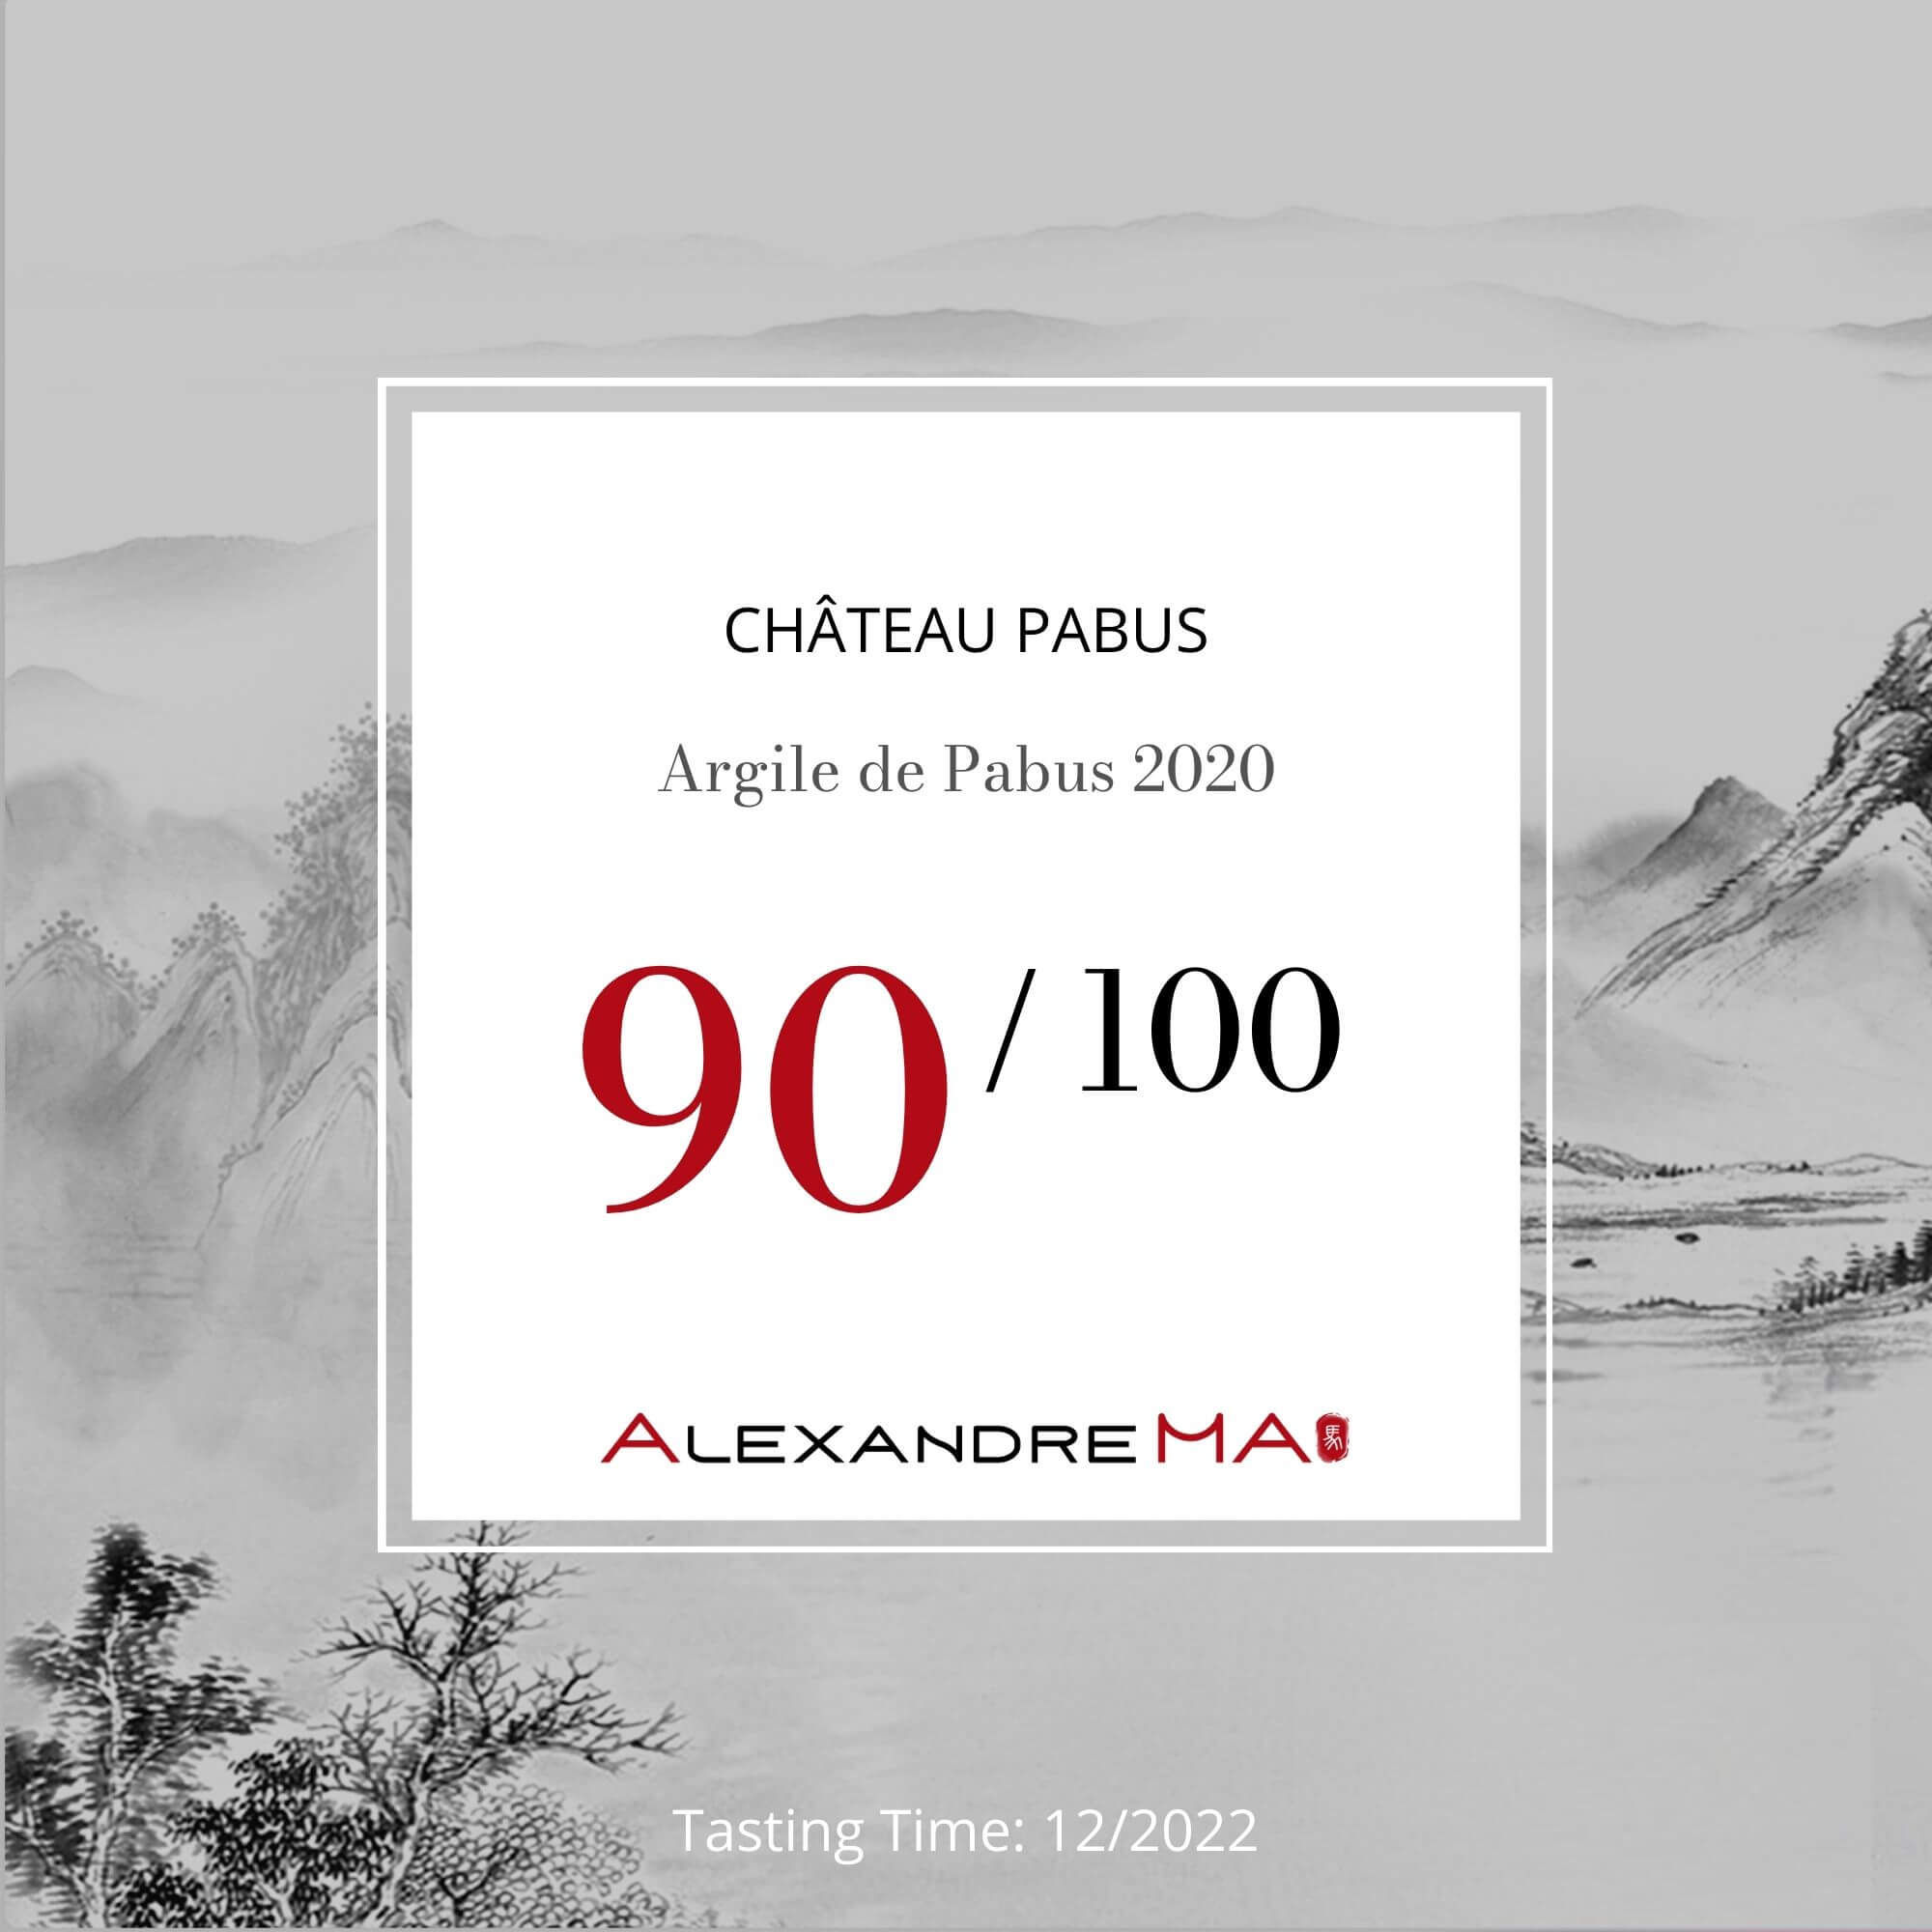 Château Pabus – Argile de Pabus 2020 - Alexandre MA